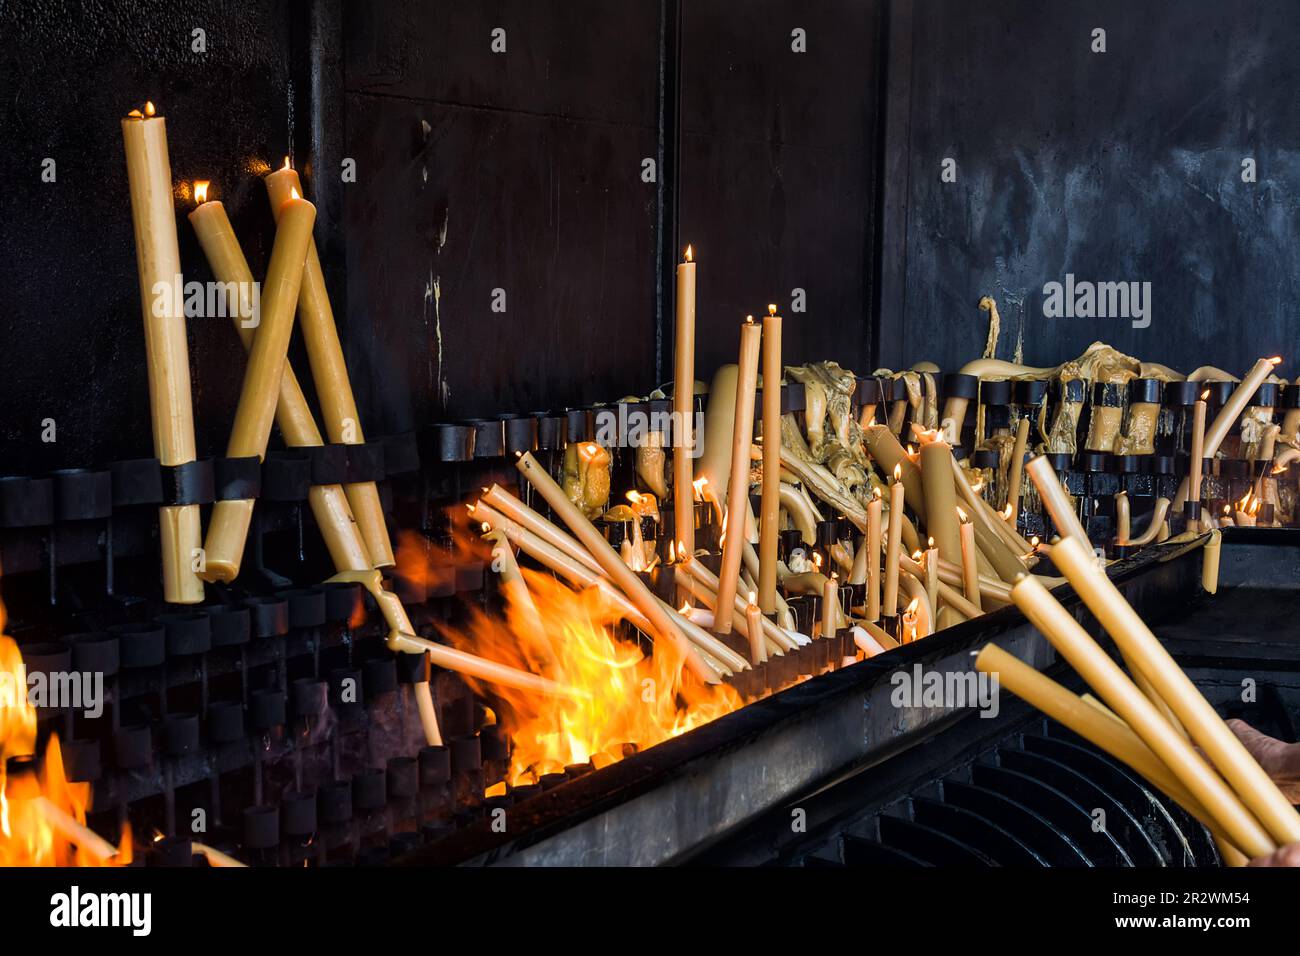 Bougies votives qui brûlent dans le pyre du Sanctuaire de Fatima, Portugal Banque D'Images